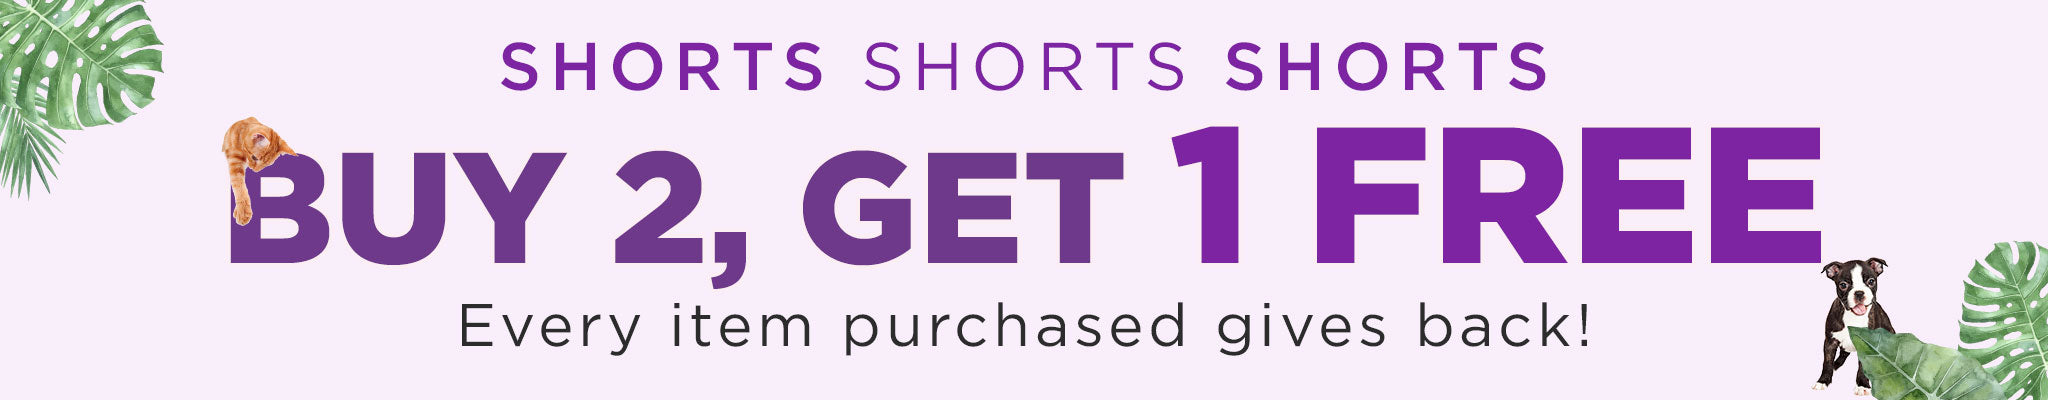 Buy 2, Get 1 FREE Shorts!